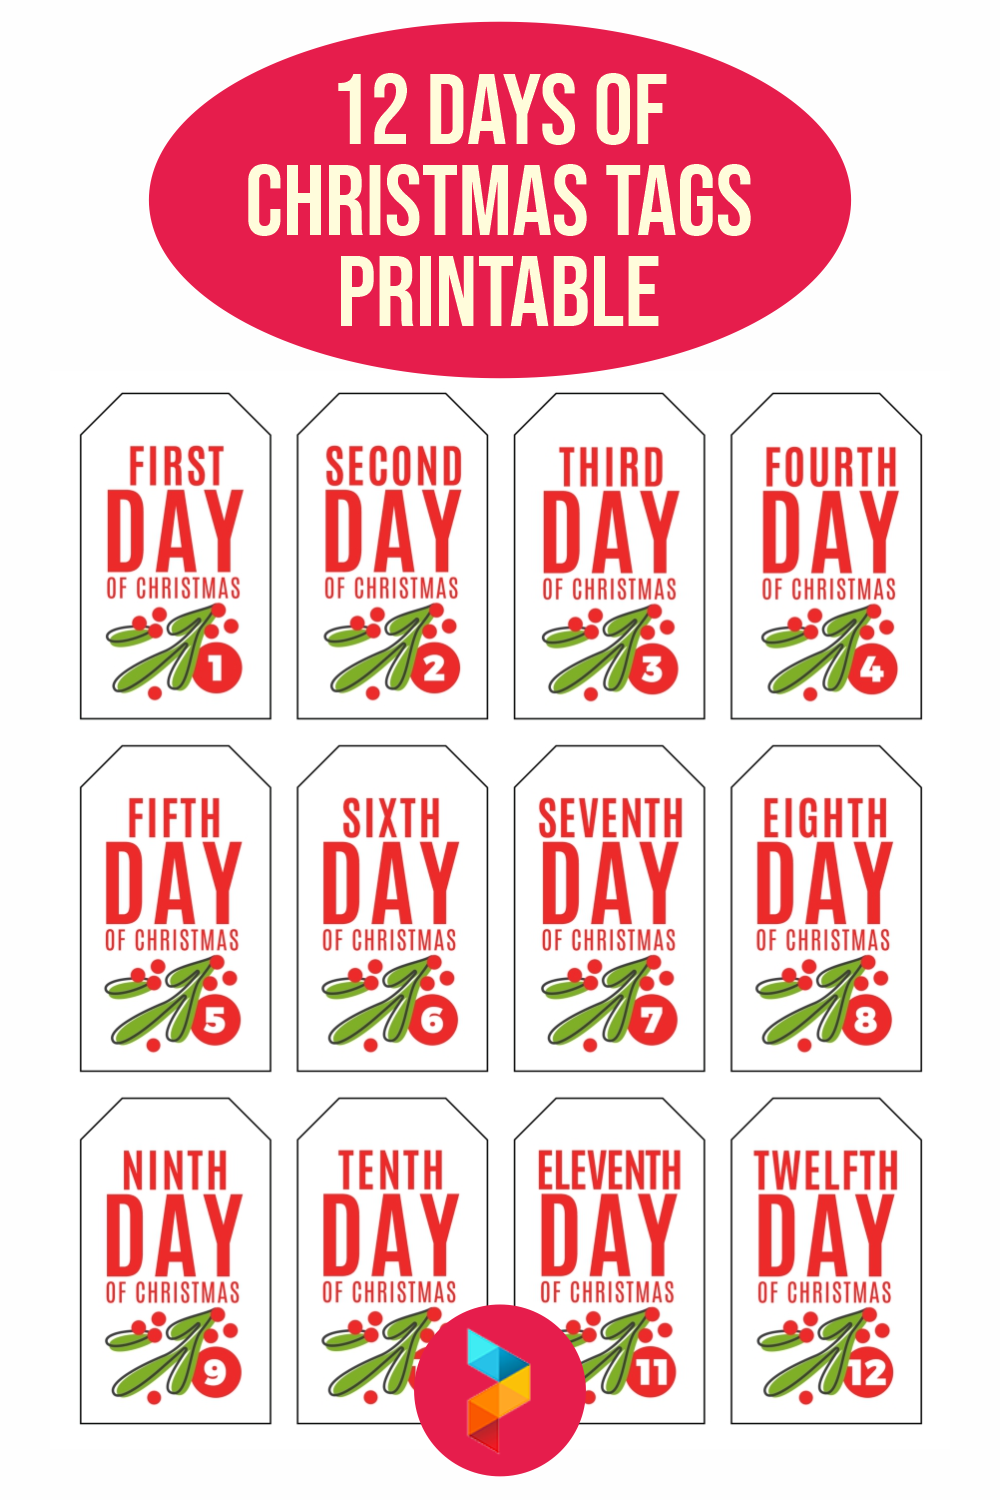 12 Days Of Christmas Tags Printable